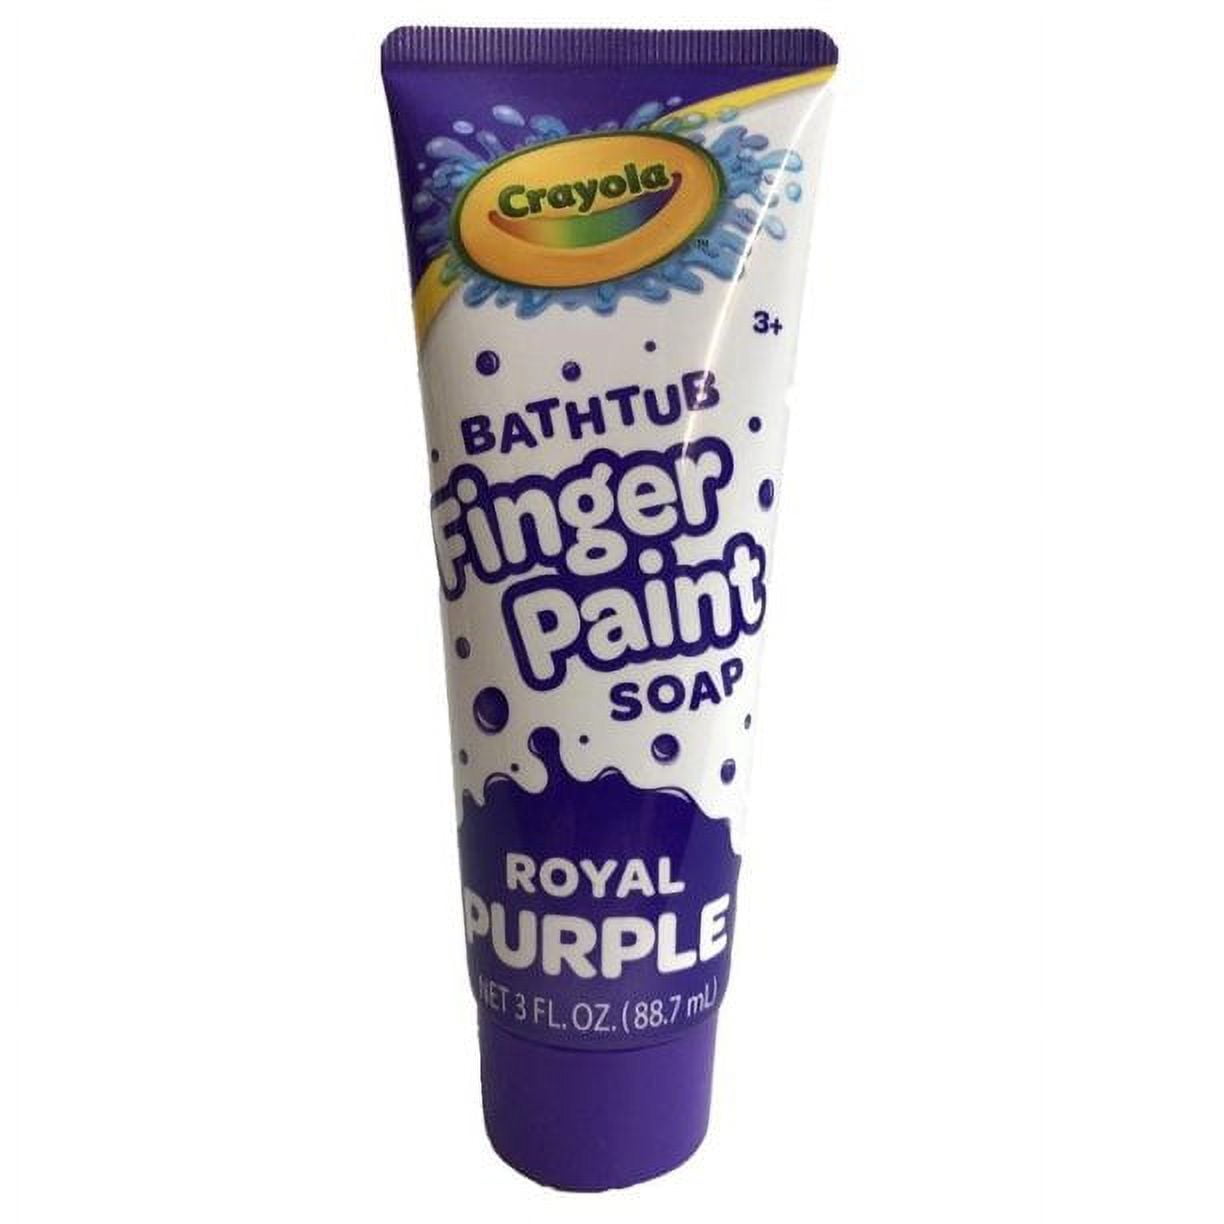 Crayola Bath Paints!!!!! Bath Tub Finger Paint Soap! 